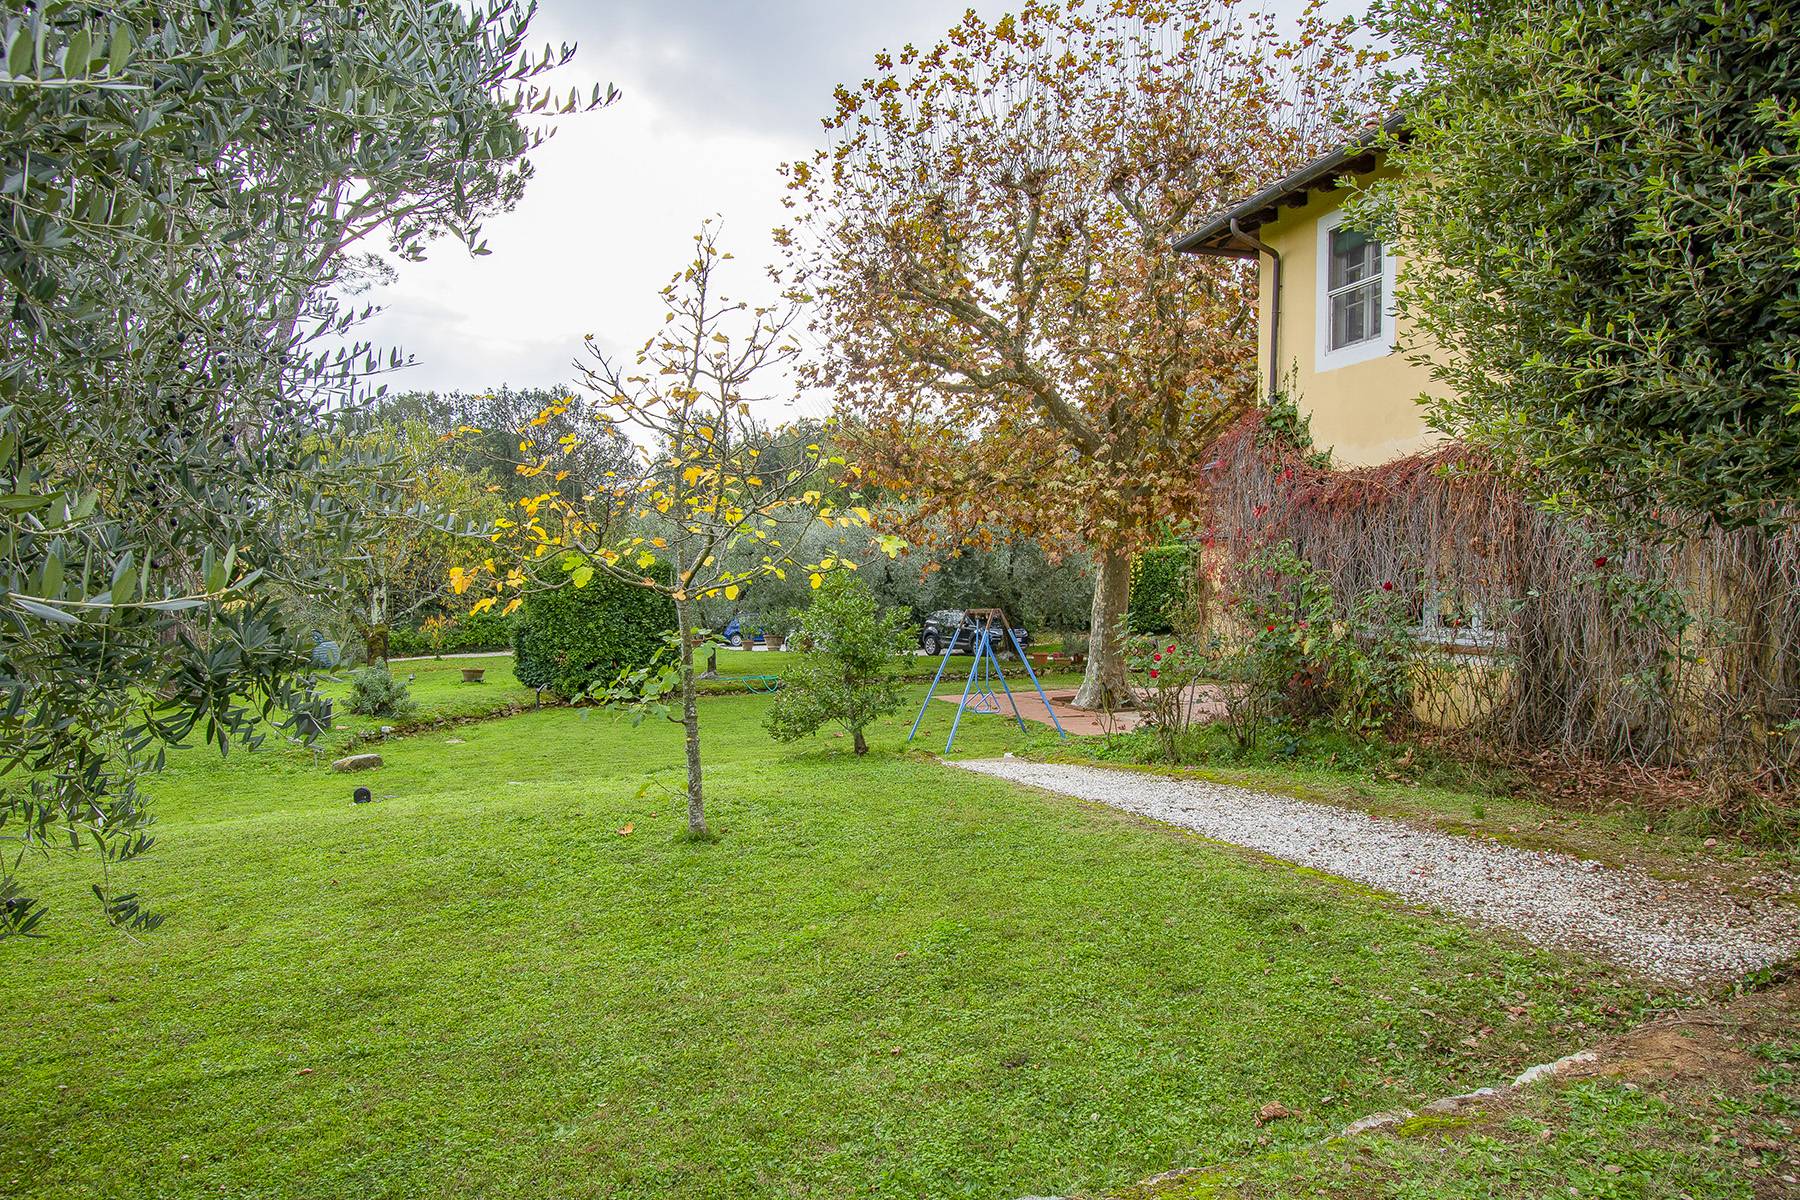 Casa indipendente in Vendita a Lucca: 5 locali, 500 mq - Foto 28